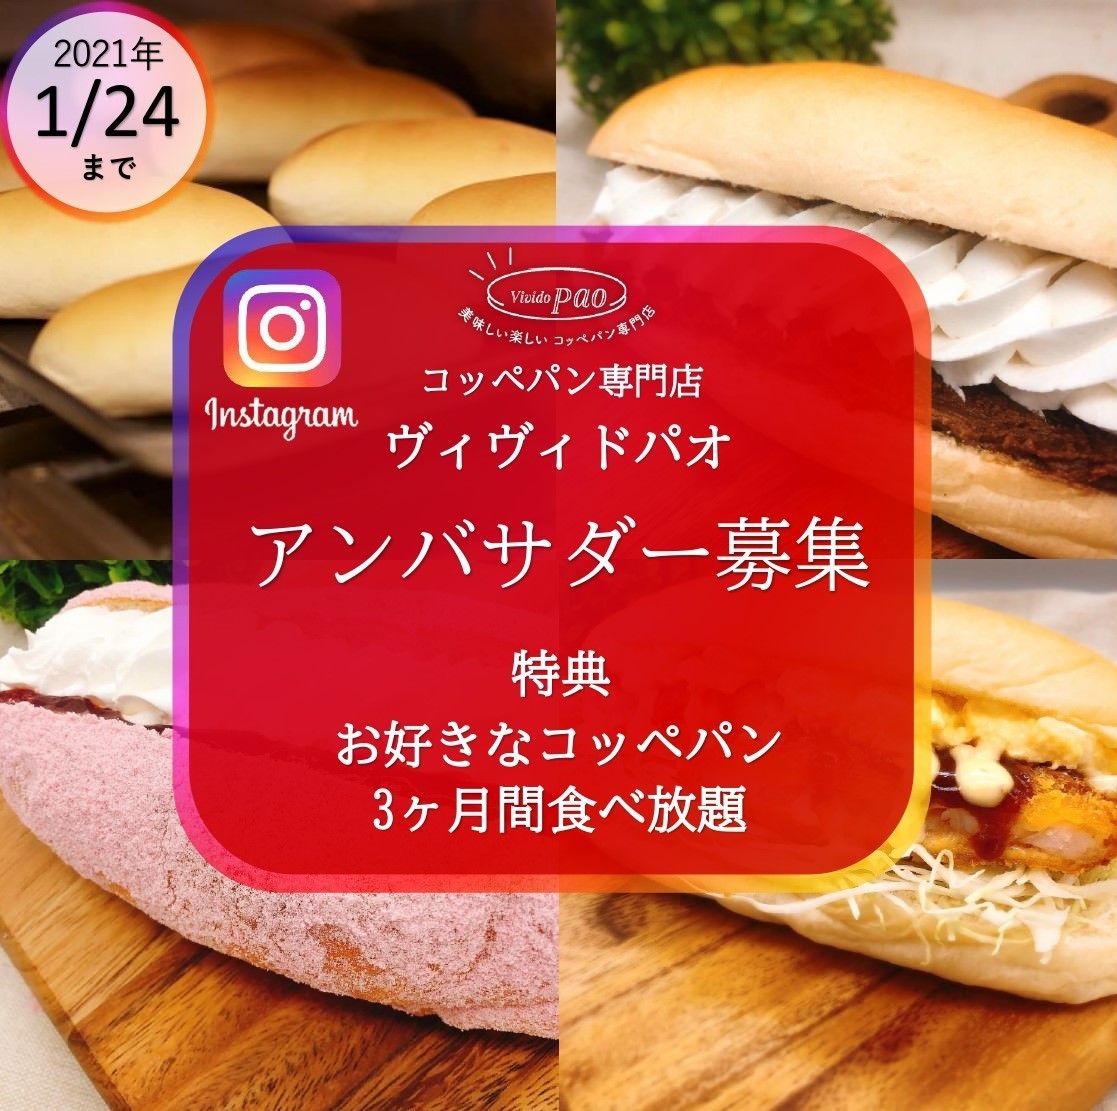 静岡のコッペパン専門店『ヴィヴィド・パオ』の
コッペパンを3ヶ月間無料で食べられる！
Instagramで活動する「公式アンバサダー」を募集